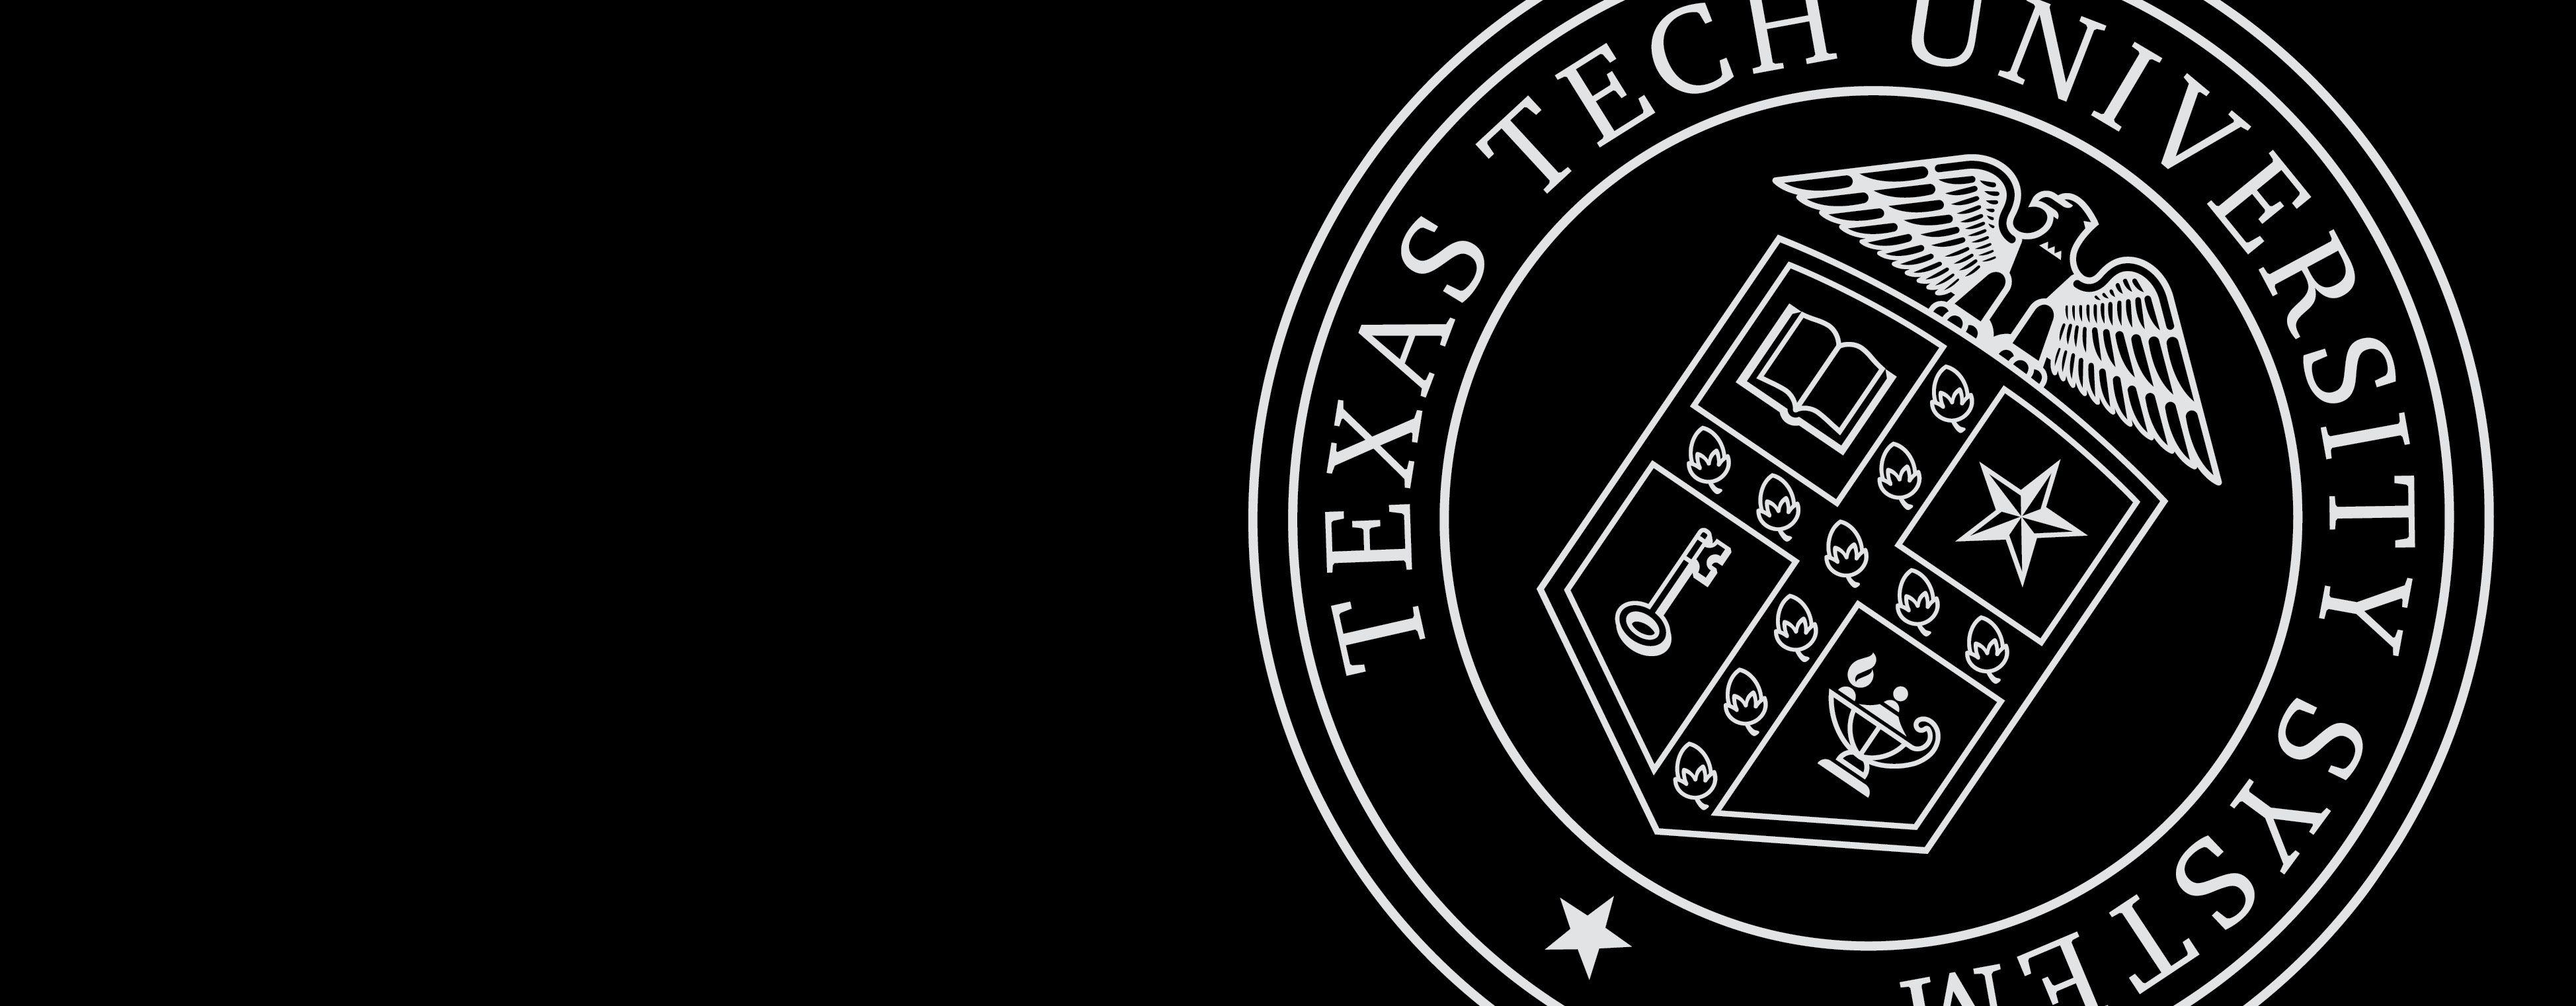 Texas Tech University Logo - Texas Tech University System. Texas Tech University System